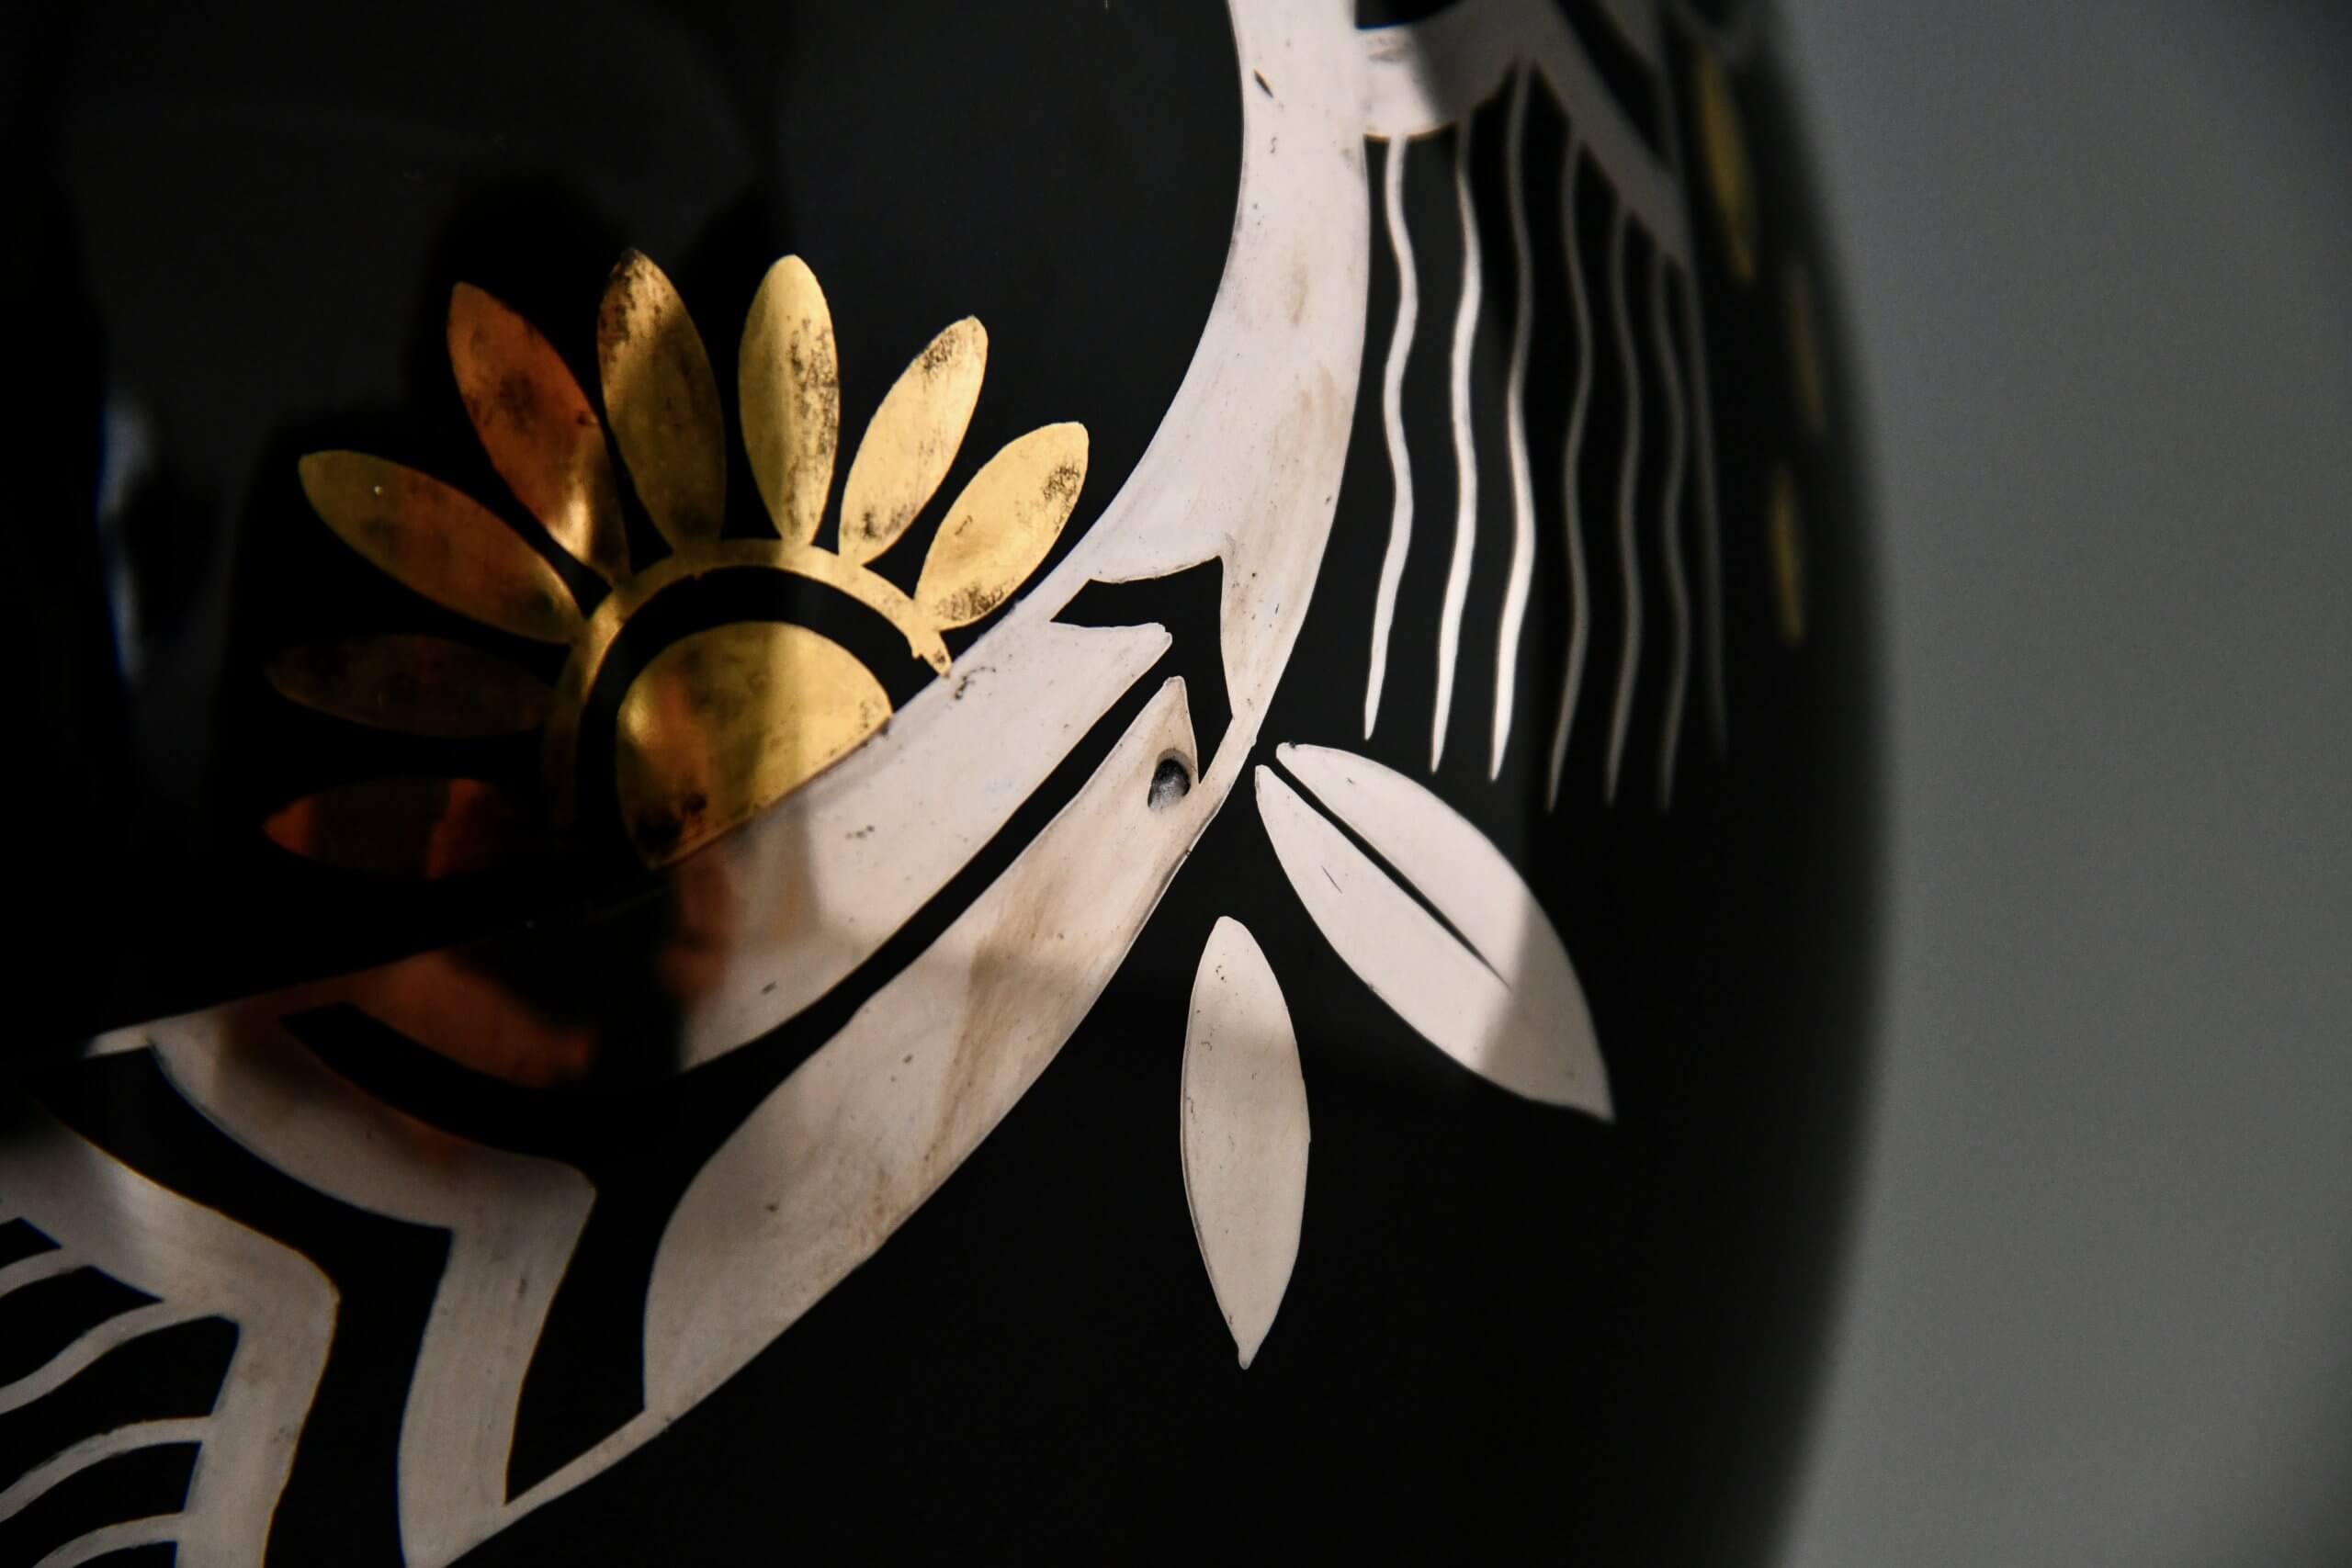 Paire de vases Art Déco en céramique